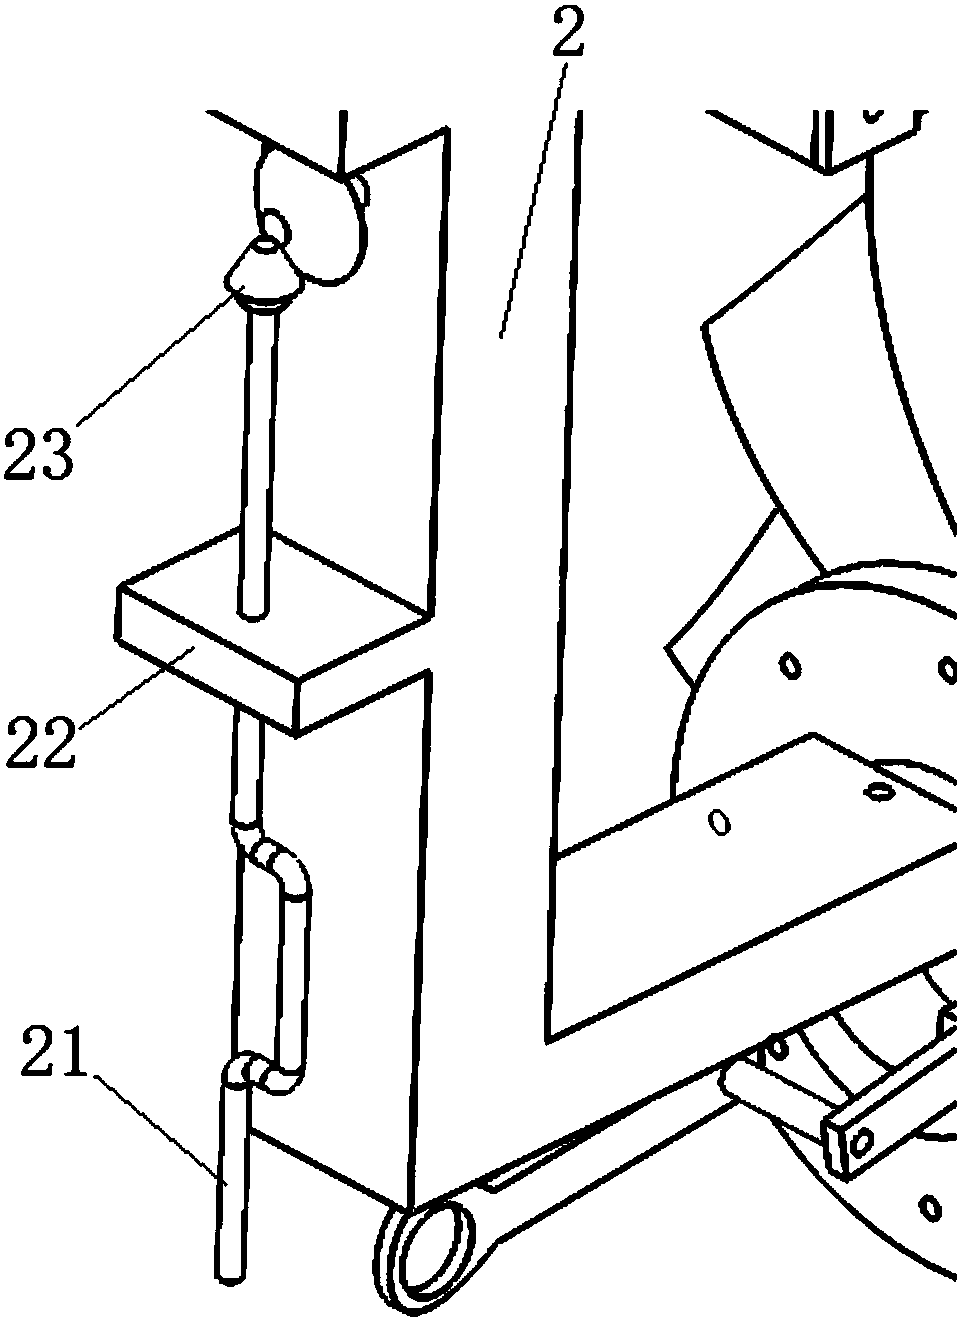 Aeroengine rotor part turning device